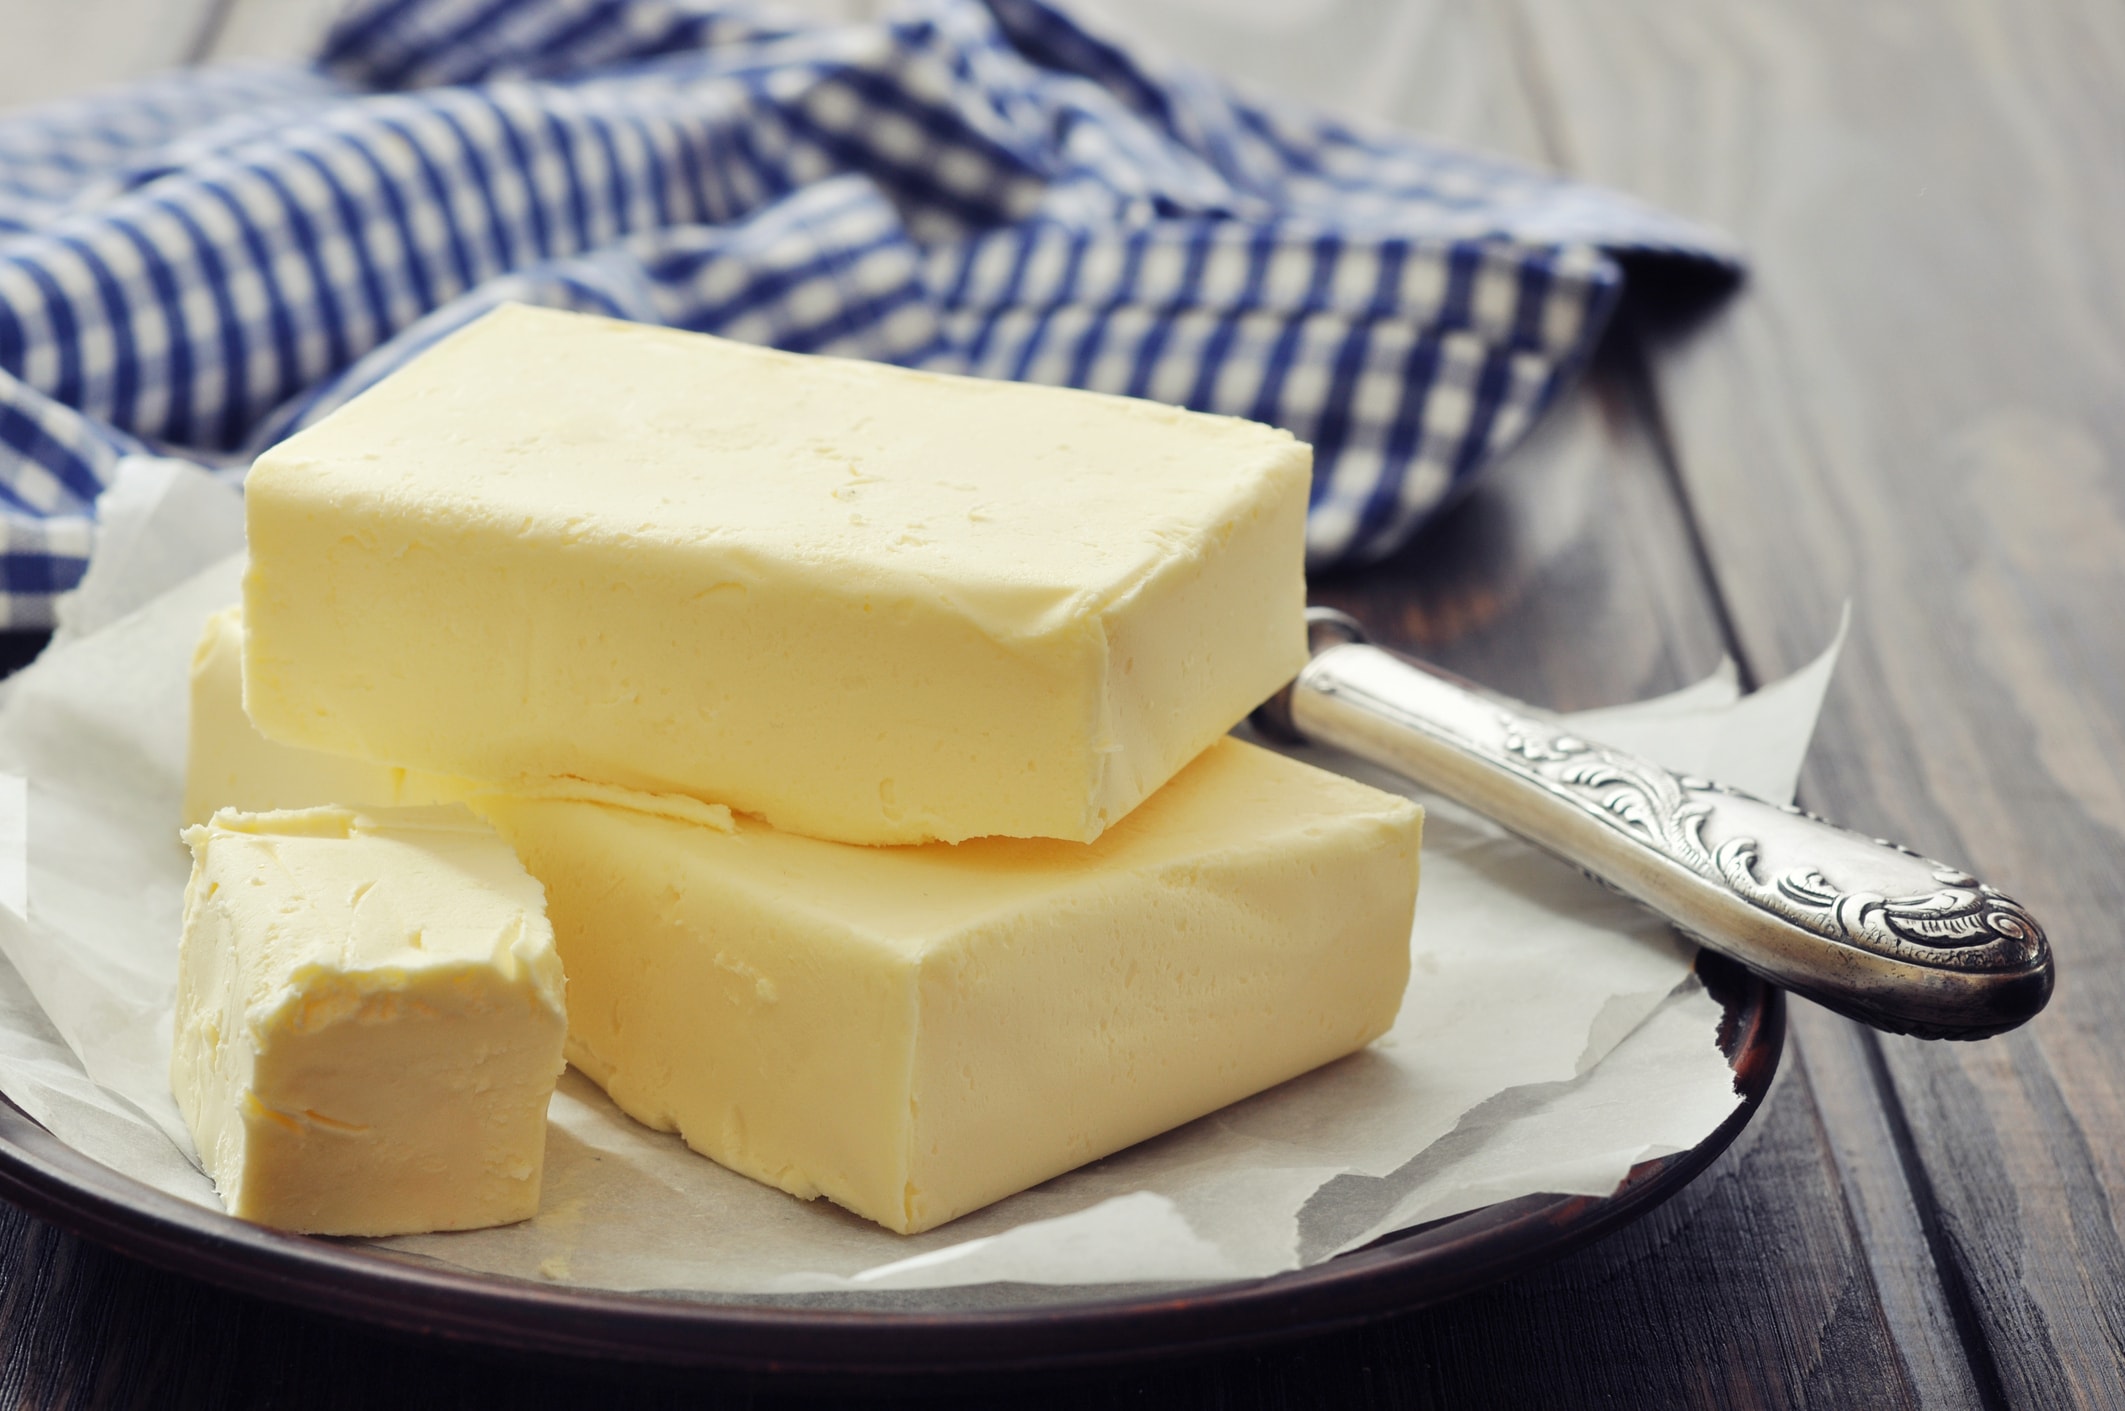 Groeiende vraag naar 'echte' boter doet de prijs wereldwijd stijgen naar recordhoogtes